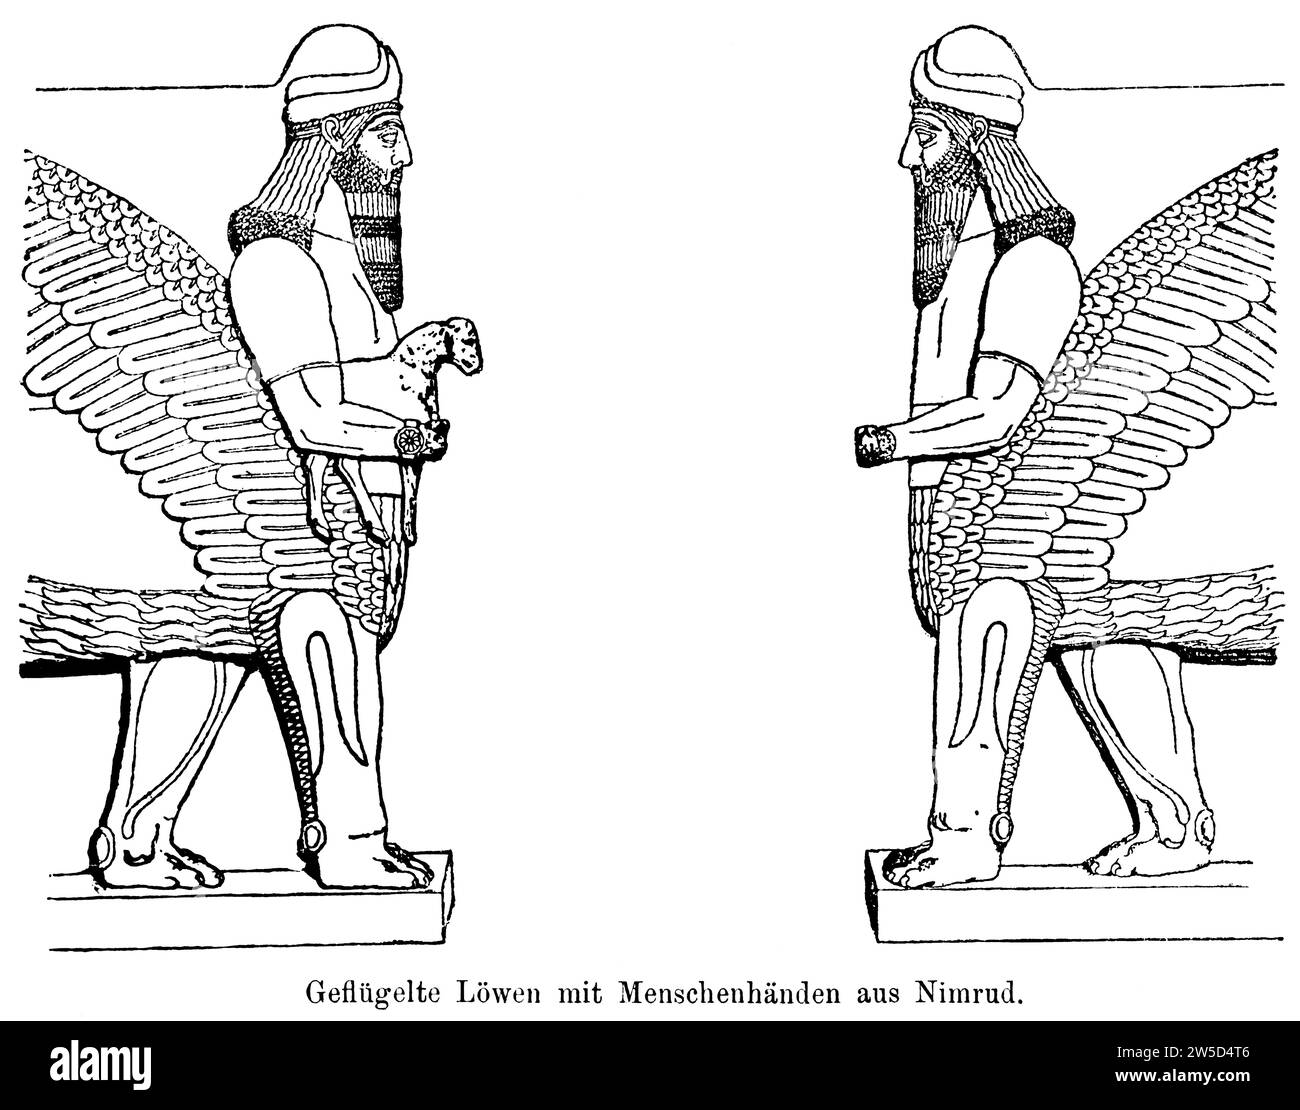 Zwei geflügelte Löwen mit menschlichen Händen von Nimrud, menschlicher Kopf, gegenüber, Flügel, Federn, Bart, Erleichterung, Schaf, Hybrid Stockfoto